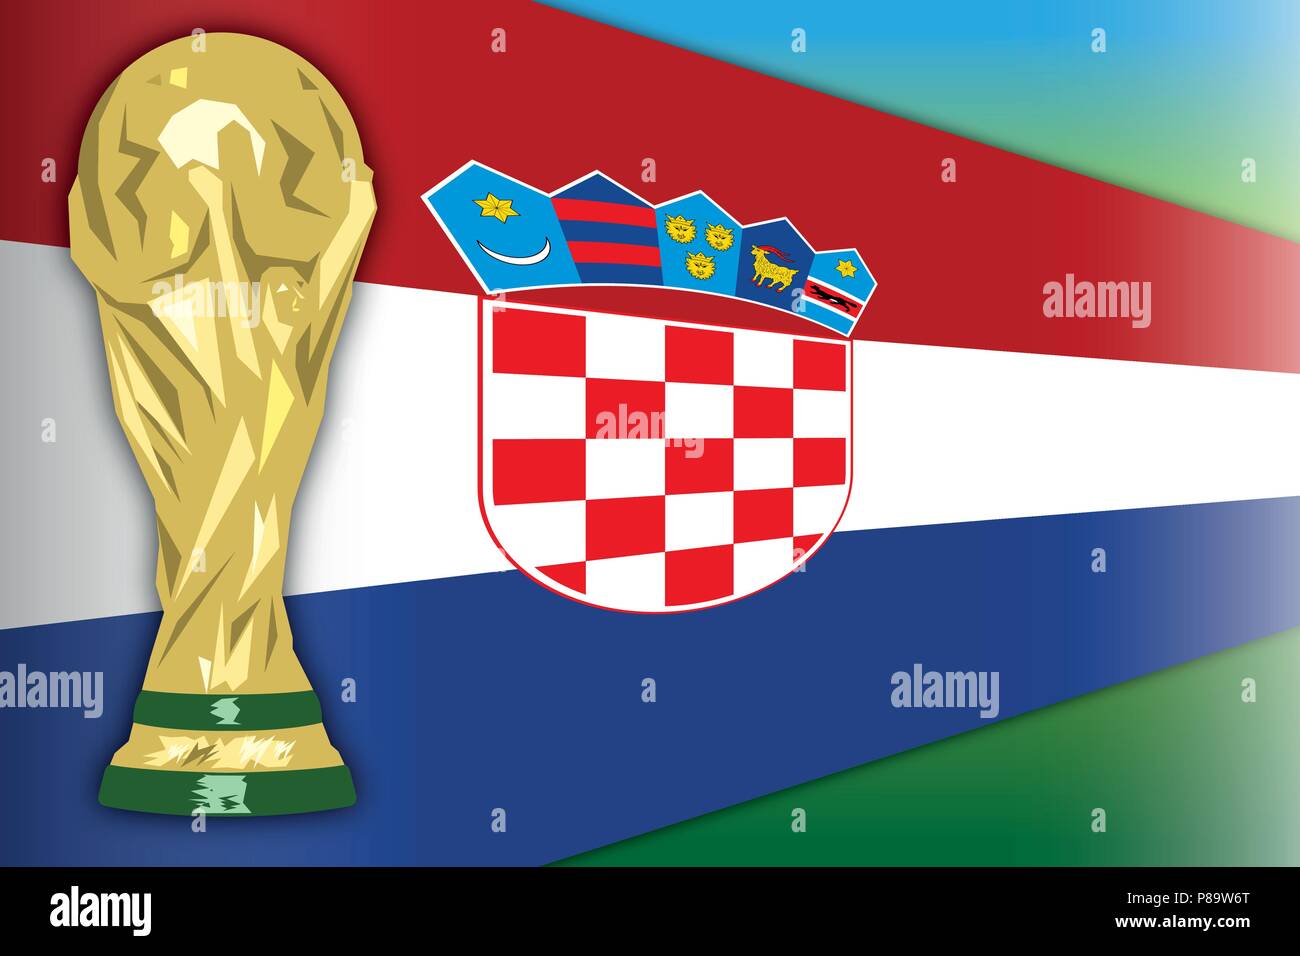 Kroatien und die Fußball-WM, Russland 2018, letzte Phase Stock Vektor